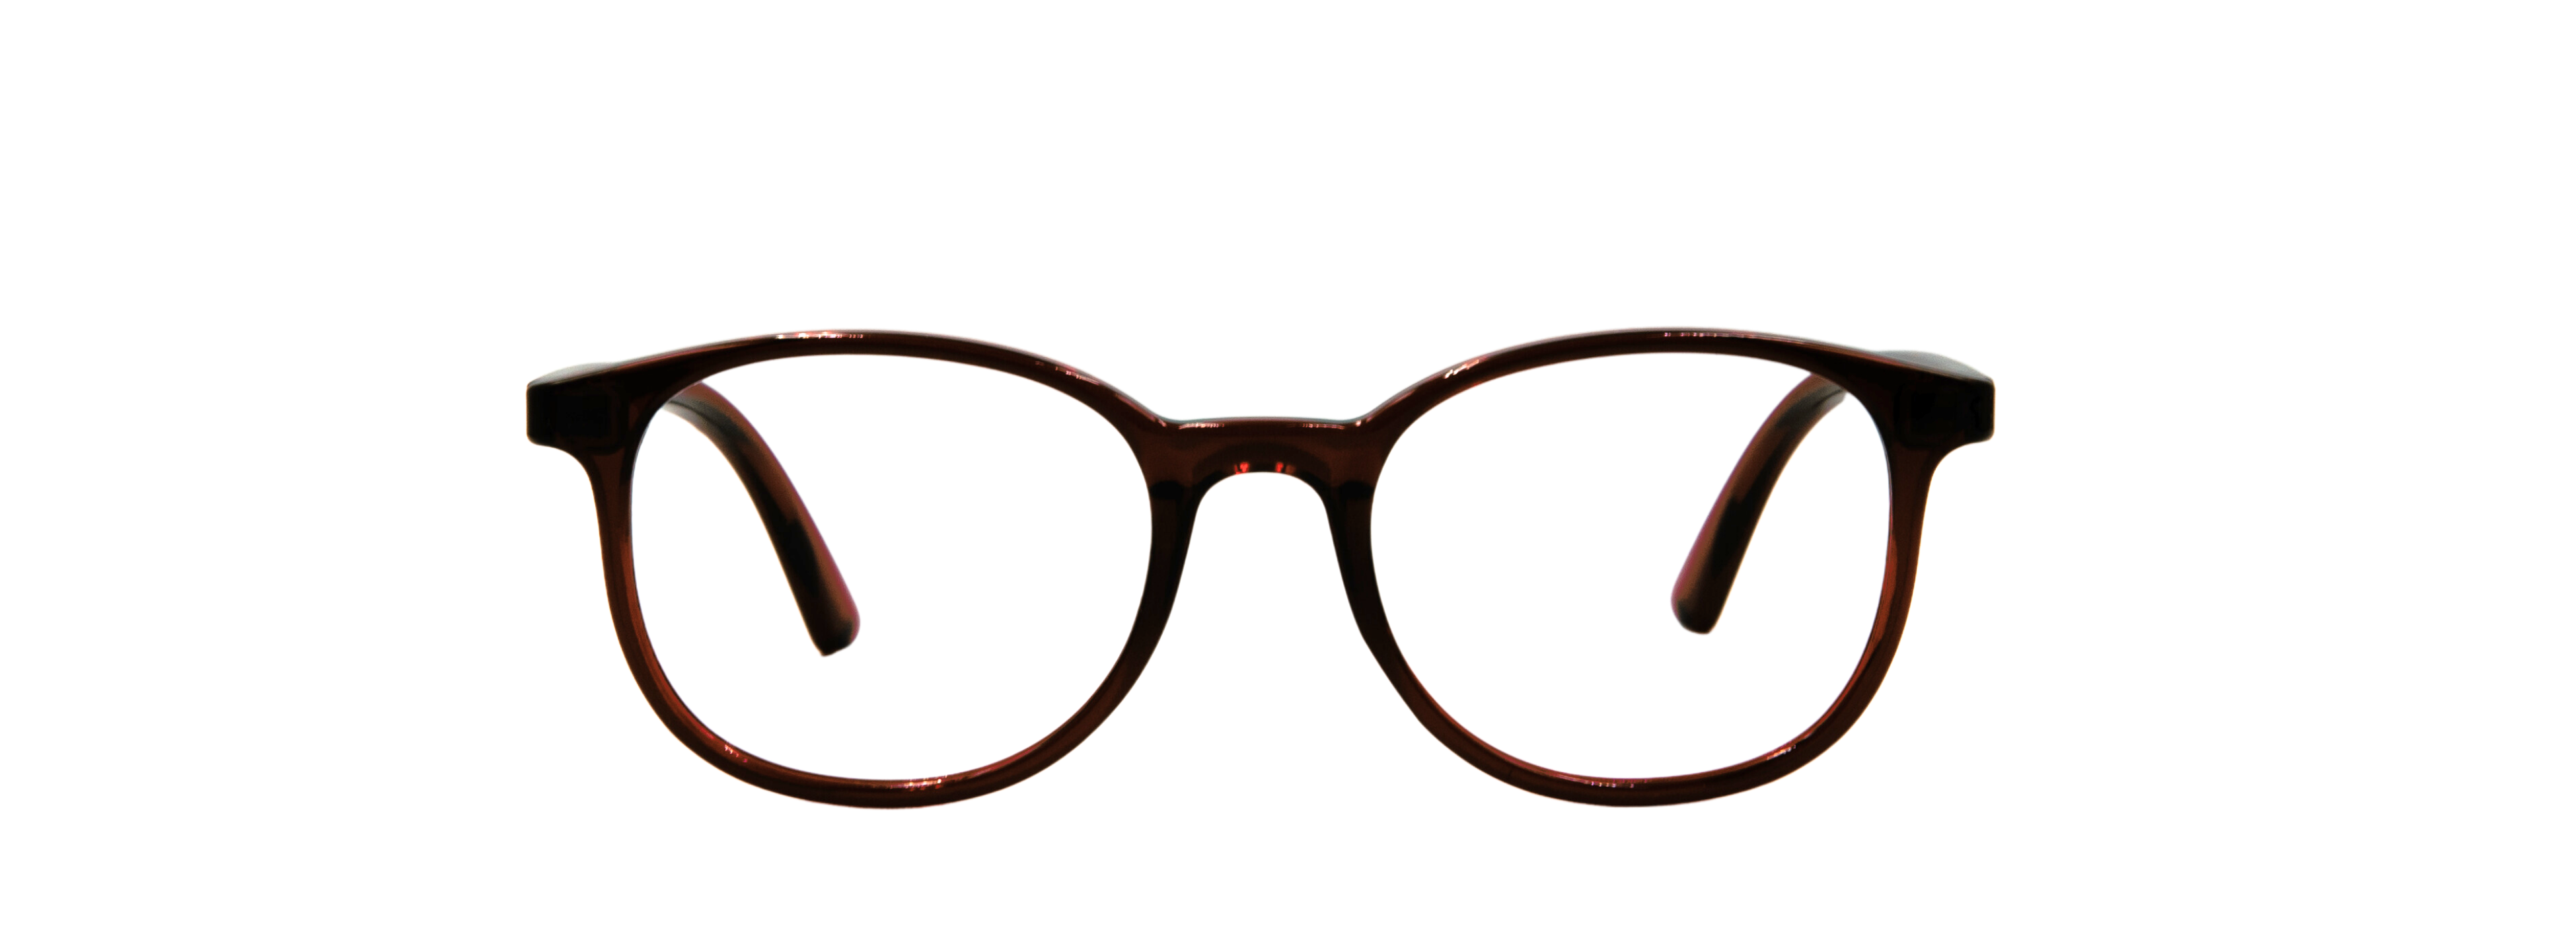 Anatolia Ventures Optik | Erkek Gözlüğü Üretim, Kadın Gözlüğü Üretim, Çocuk Gözlüğü Üretim, Kolej Gözlüğü Üretim, Okuma Gözlüğü Üretim, Unisex Gözlüğü Üretim, Güneş Gözlüğü Üretim , Köprül Gözlüğü Üretim,  Erkek Gözlüğü, Kadın Gözlüğü, Çocuk Gözlüğü, Kolej Gözlüğü, Okuma Gözlüğü, Unisex Gözlüğü, Güneş Gözlüğü, Frenk Gözlüğü, Frenk Metal Gözlüğü, Frenk Okuma Gözlüğü, Frenk Güneş Gözlüğü, Köprül Gözlüğü